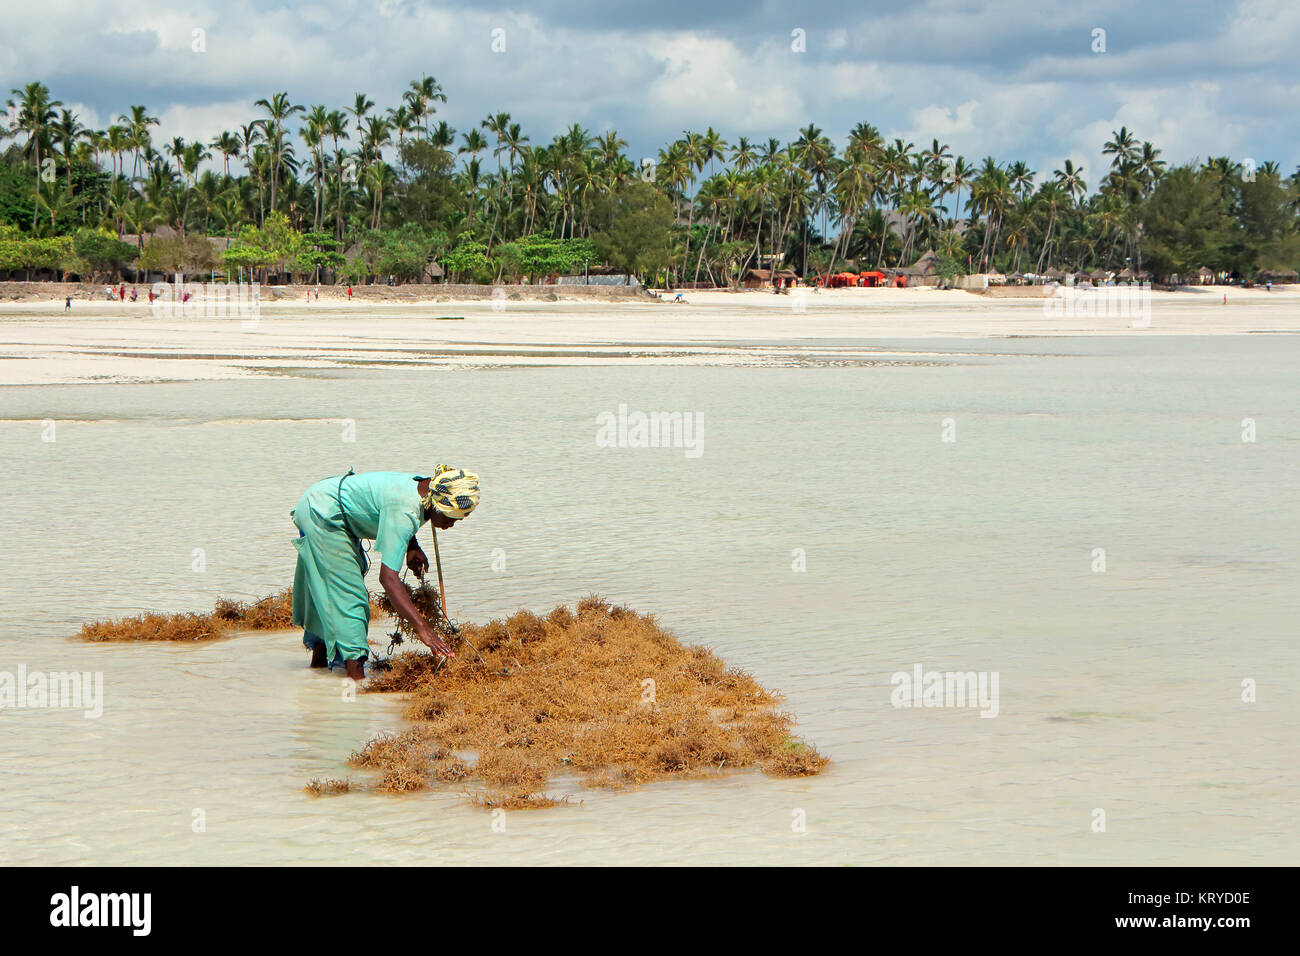 ZANZIBAR, TANZANIA - Ottobre 25, 2014: donna non identificato la raccolta di alghe coltivate in poco profondi e chiare acque costiere dell'isola di Zanzibar Foto Stock